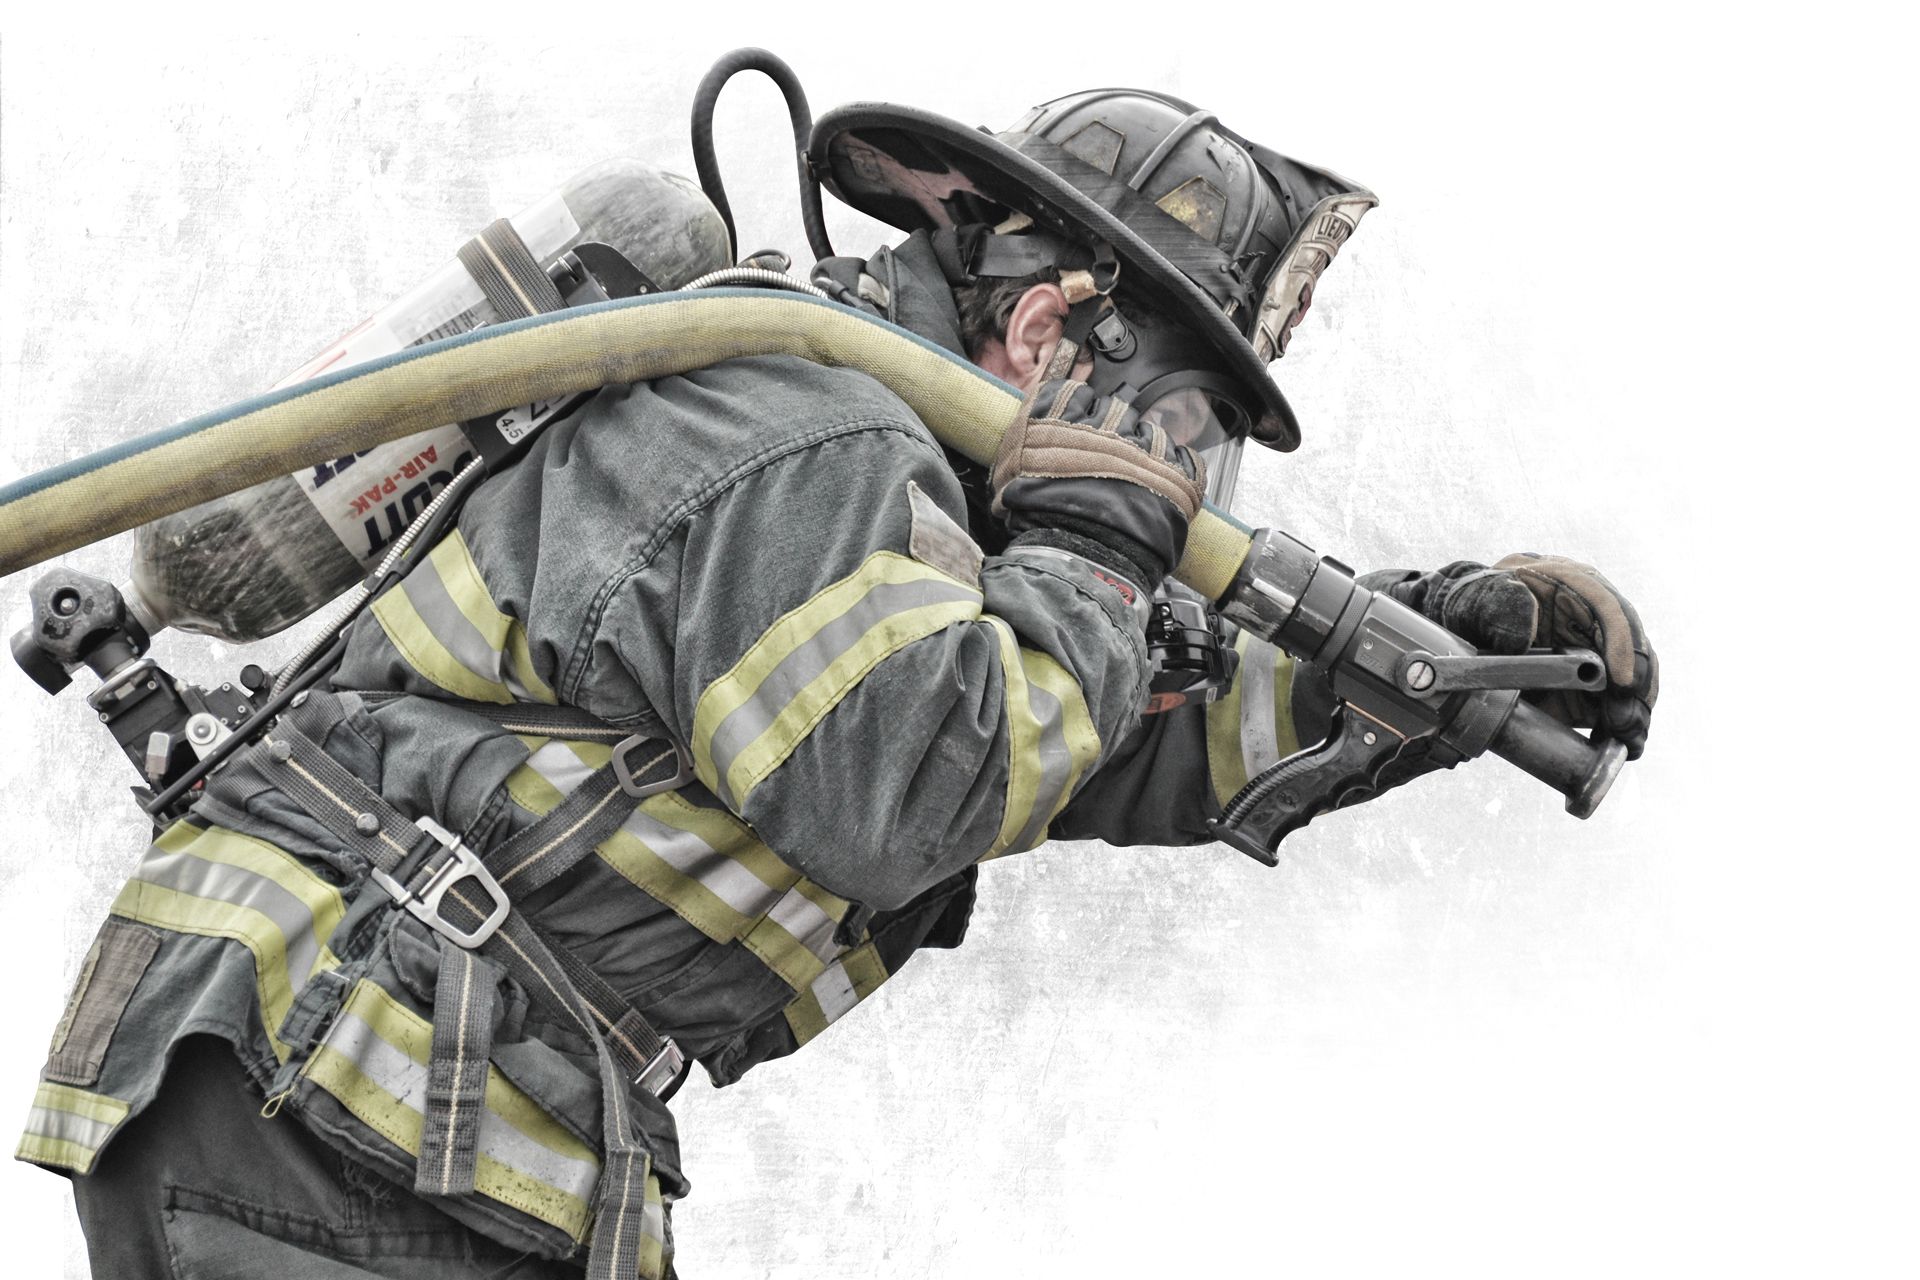 Firefighter Desktop Wallpaper Photos I